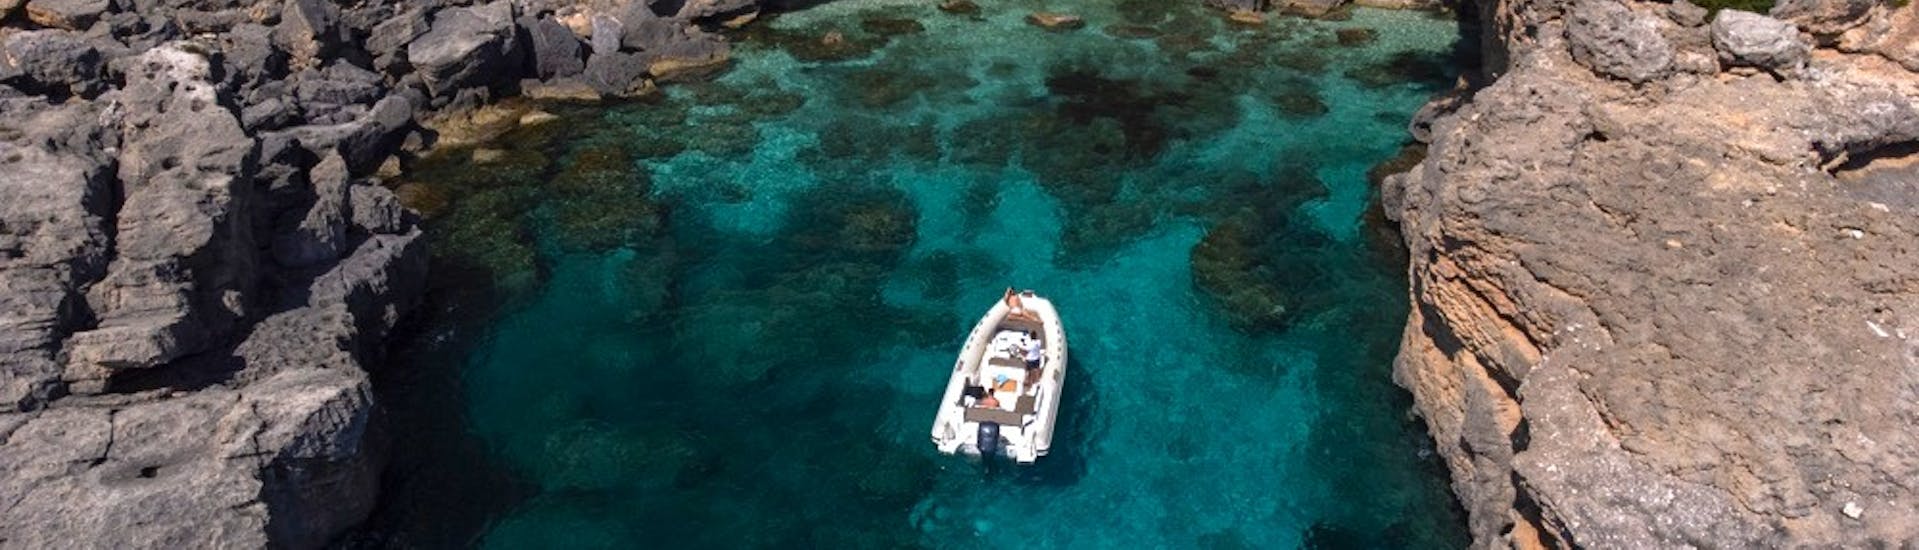 La lancha utilizada para el alquiler de lanchas en Cala Gonone (hasta 5 personas) con Nuovo Consorzio Trasporti Marittimi navega en el mar.